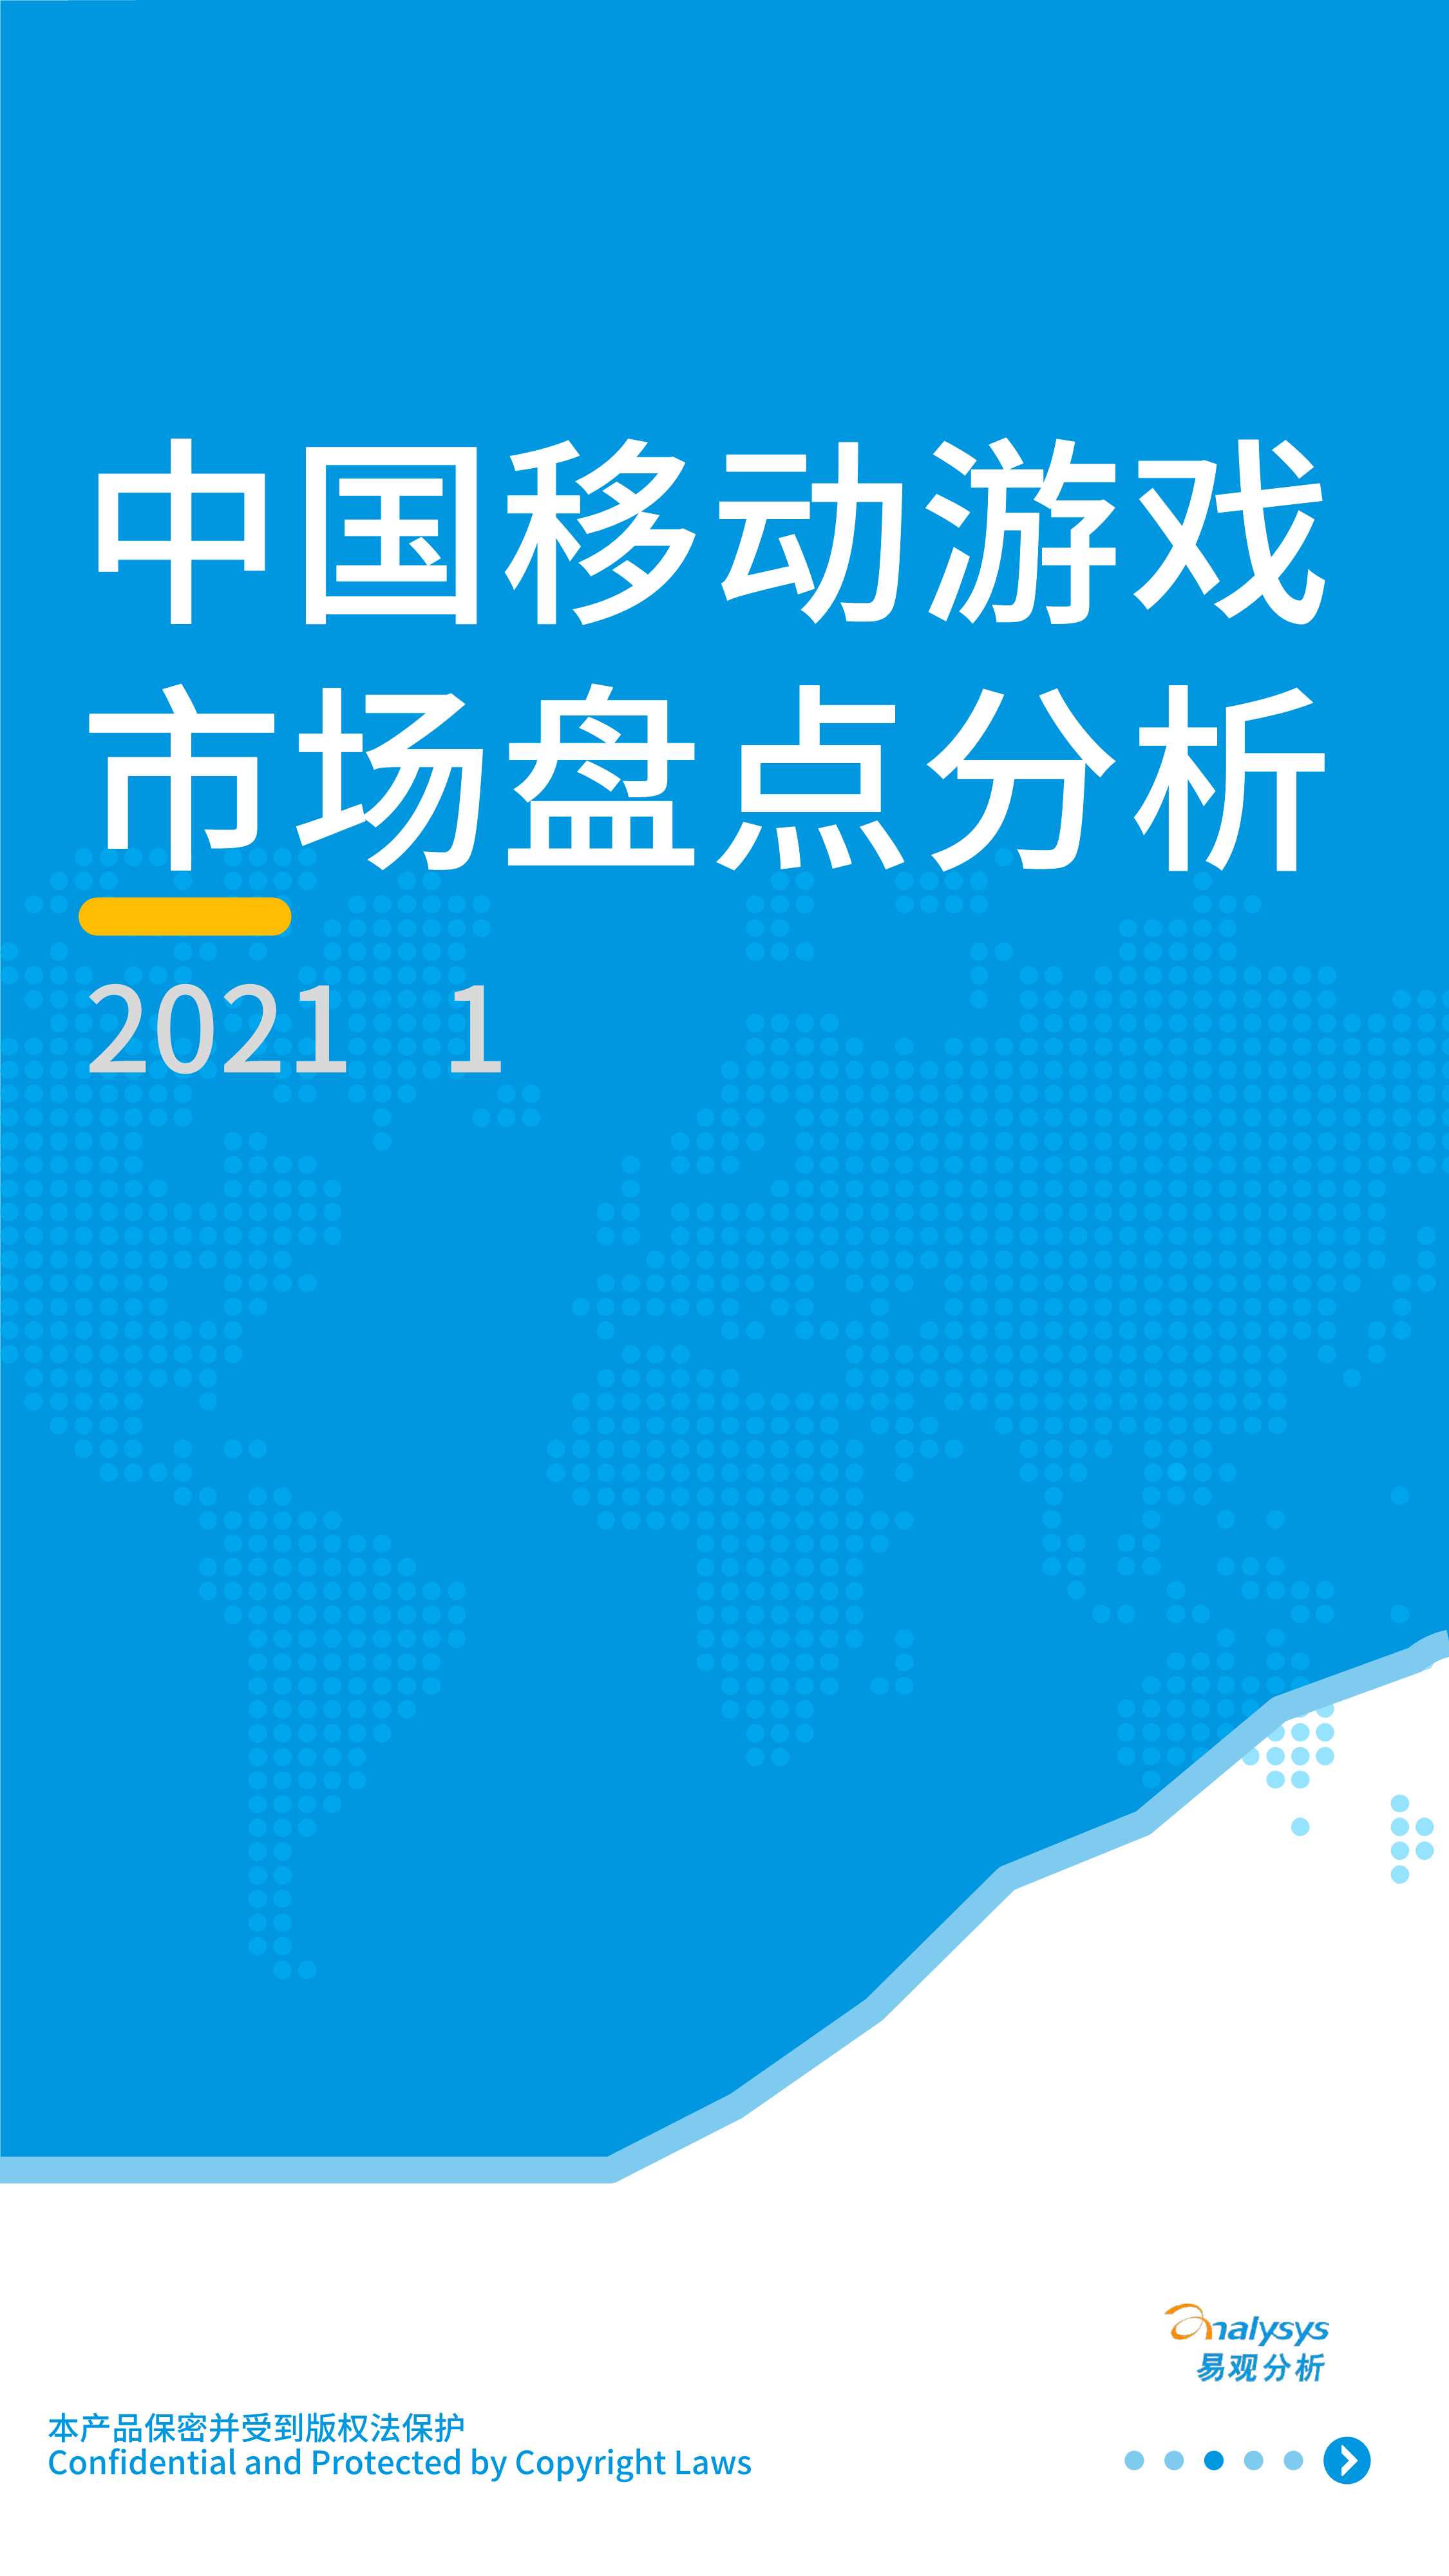 易观-2021年H1中国移动游戏市场盘点分析-2021.09-19页